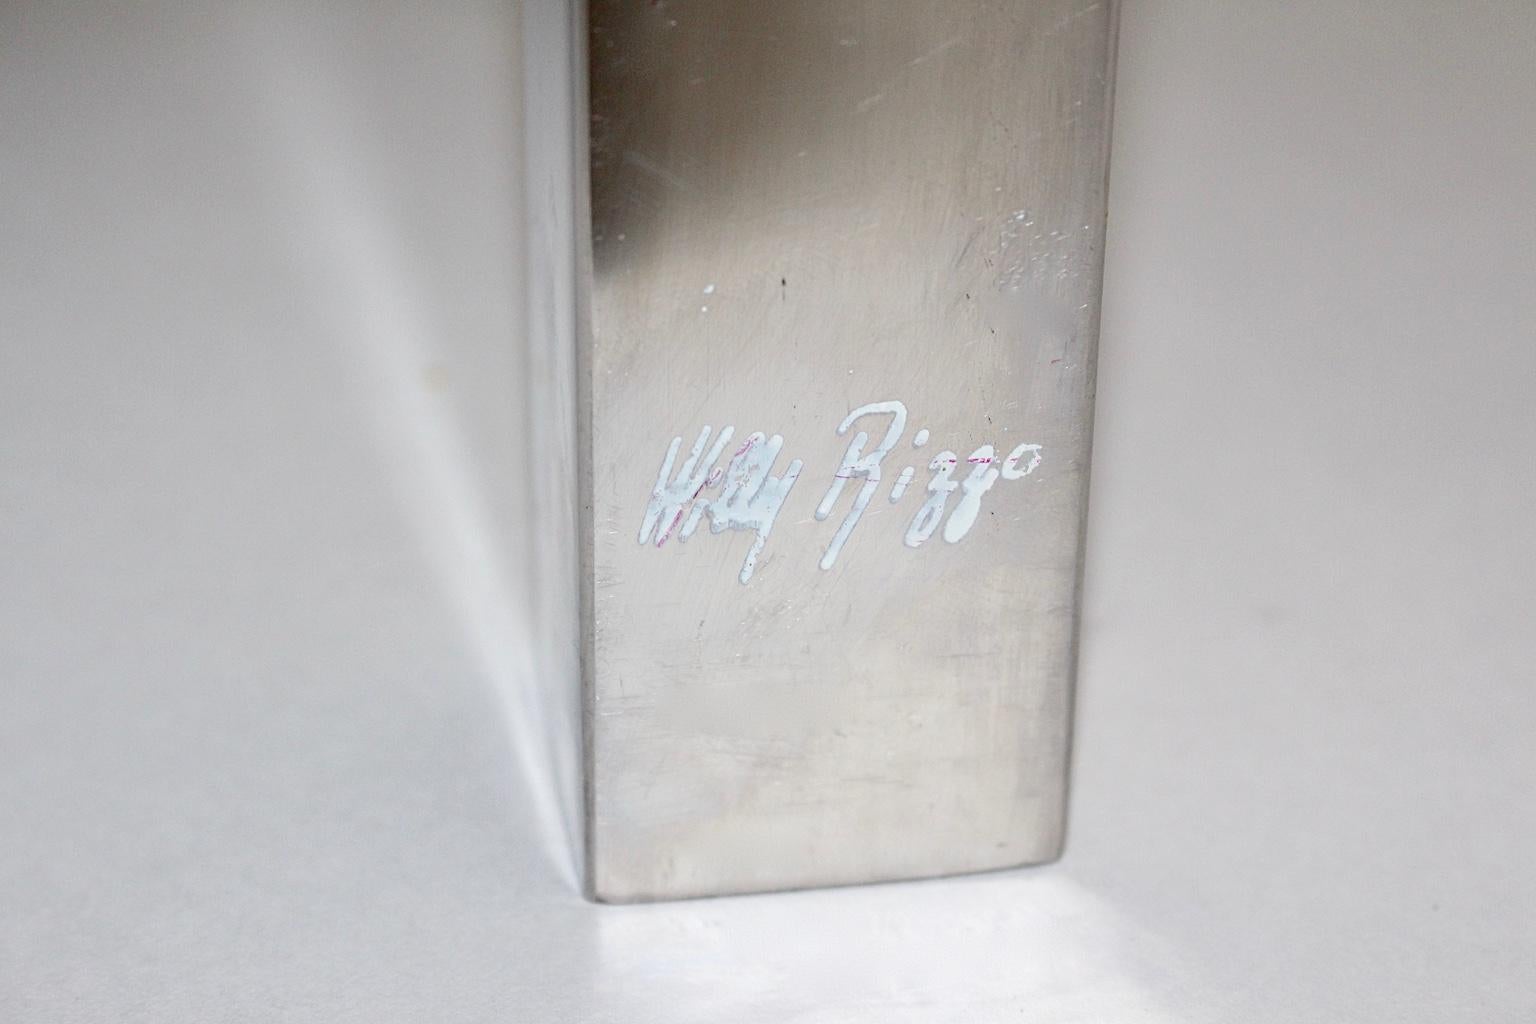 Dieser signierte Vintage-Couchtisch von Willy Rizzo wurde aus Messing und verchromtem Metall hergestellt und ist eine elegante Schönheit.
Willy Rizzo (1928-2013) war ein Fotograf und Designer, der mit den wichtigsten Künstlern seines Jahrzehnts